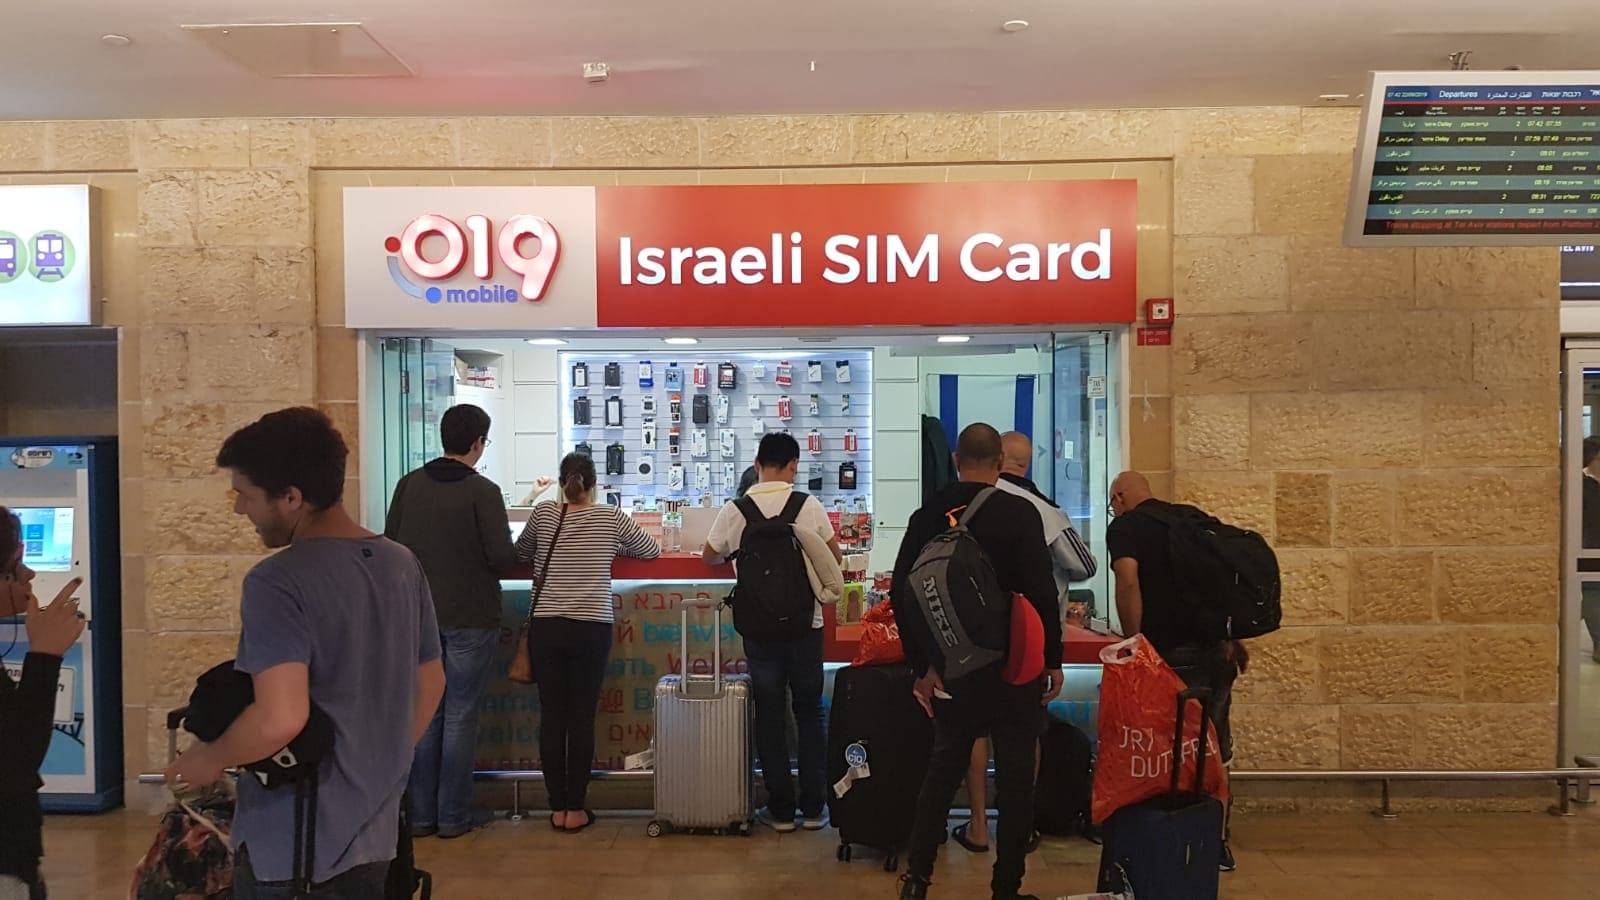 Жизнь в израиле 2021 году: прожиточный минимум, уровень жизни, цены — все о визах и эмиграции